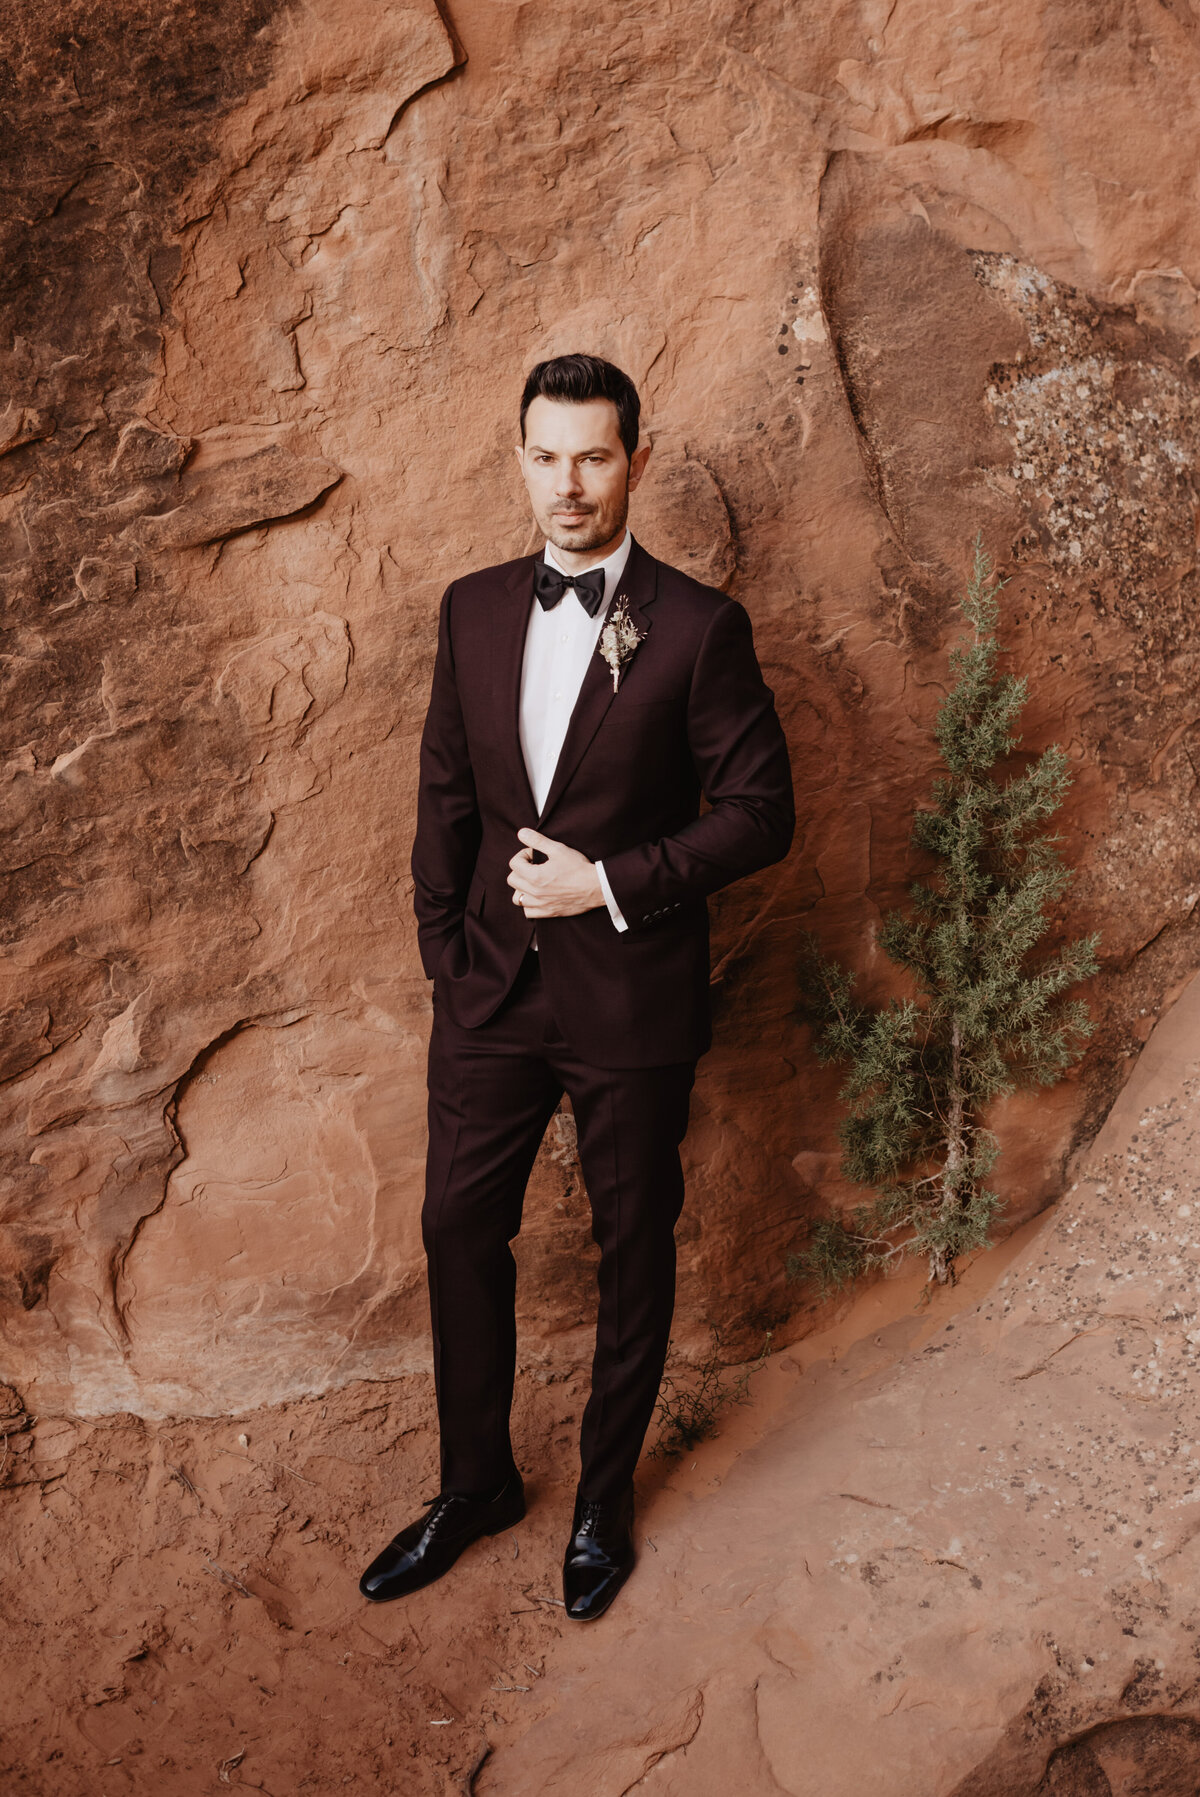 Utah elopement photographer captures groom wearing burgundy suit